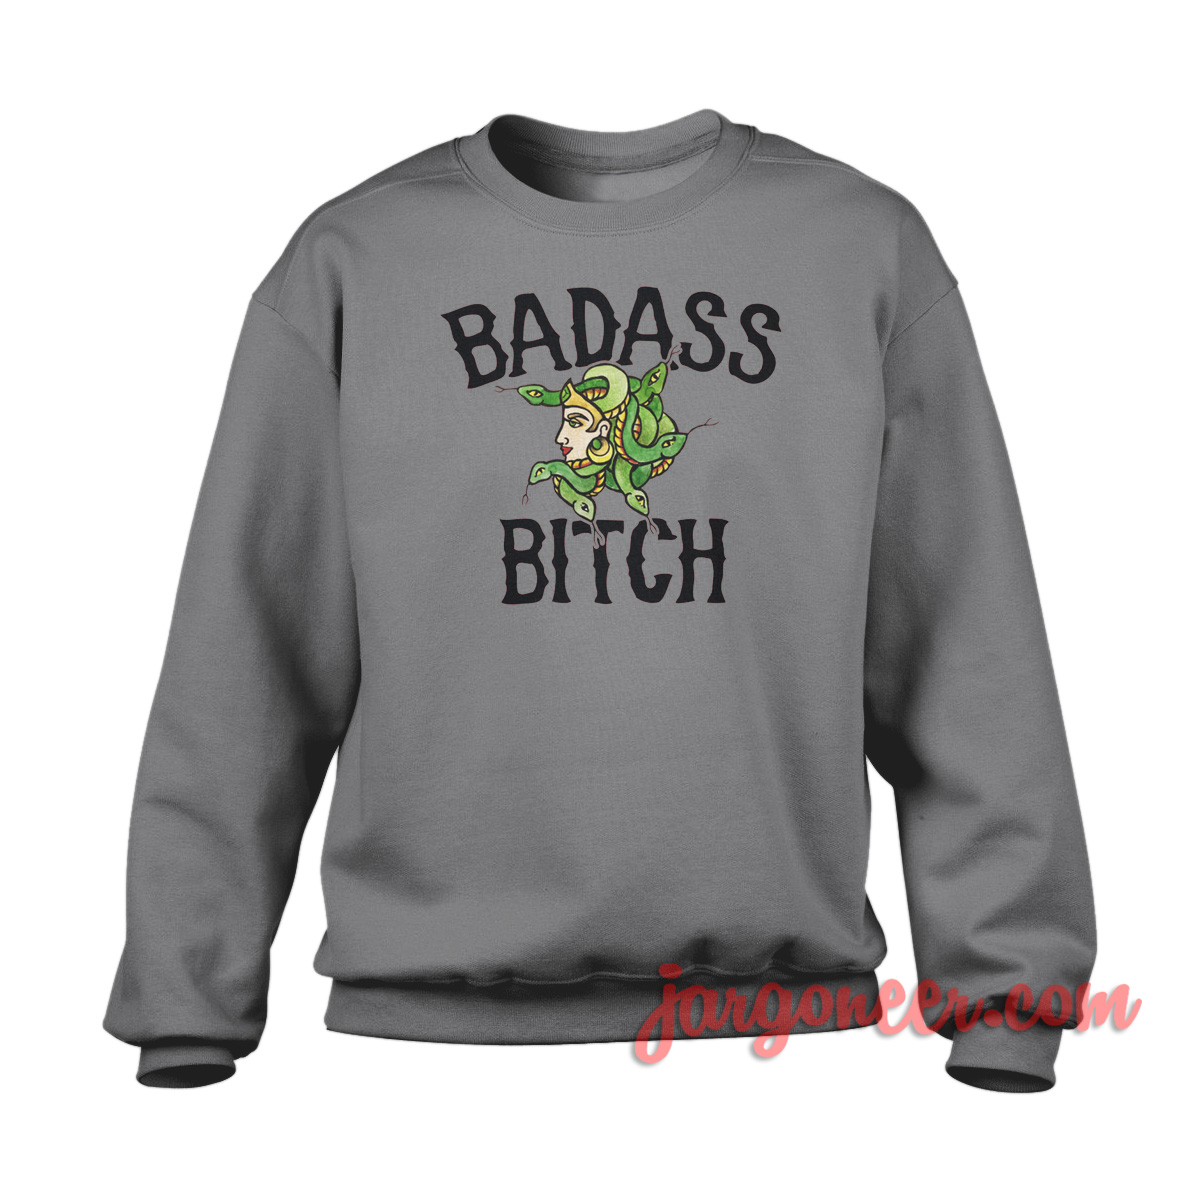 Bad Ass Bitch - Shop Unique Graphic Cool Shirt Designs